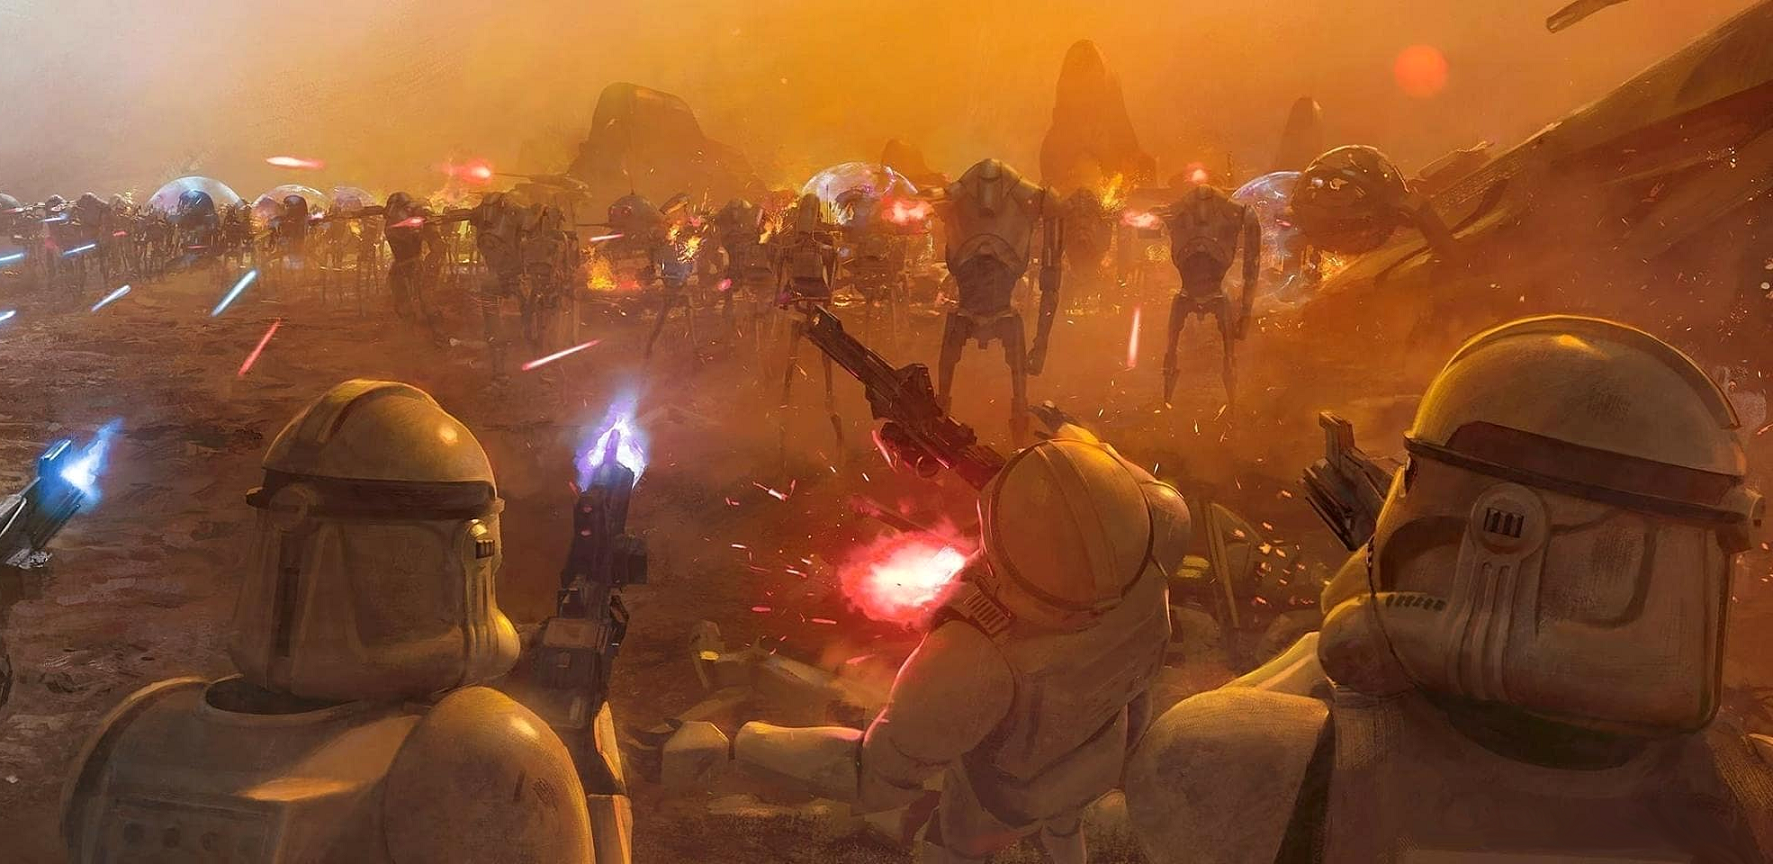 Ilustracja przedstawiające walczące klony z droidami bojowymi stanowiąca element przedniej okładki.